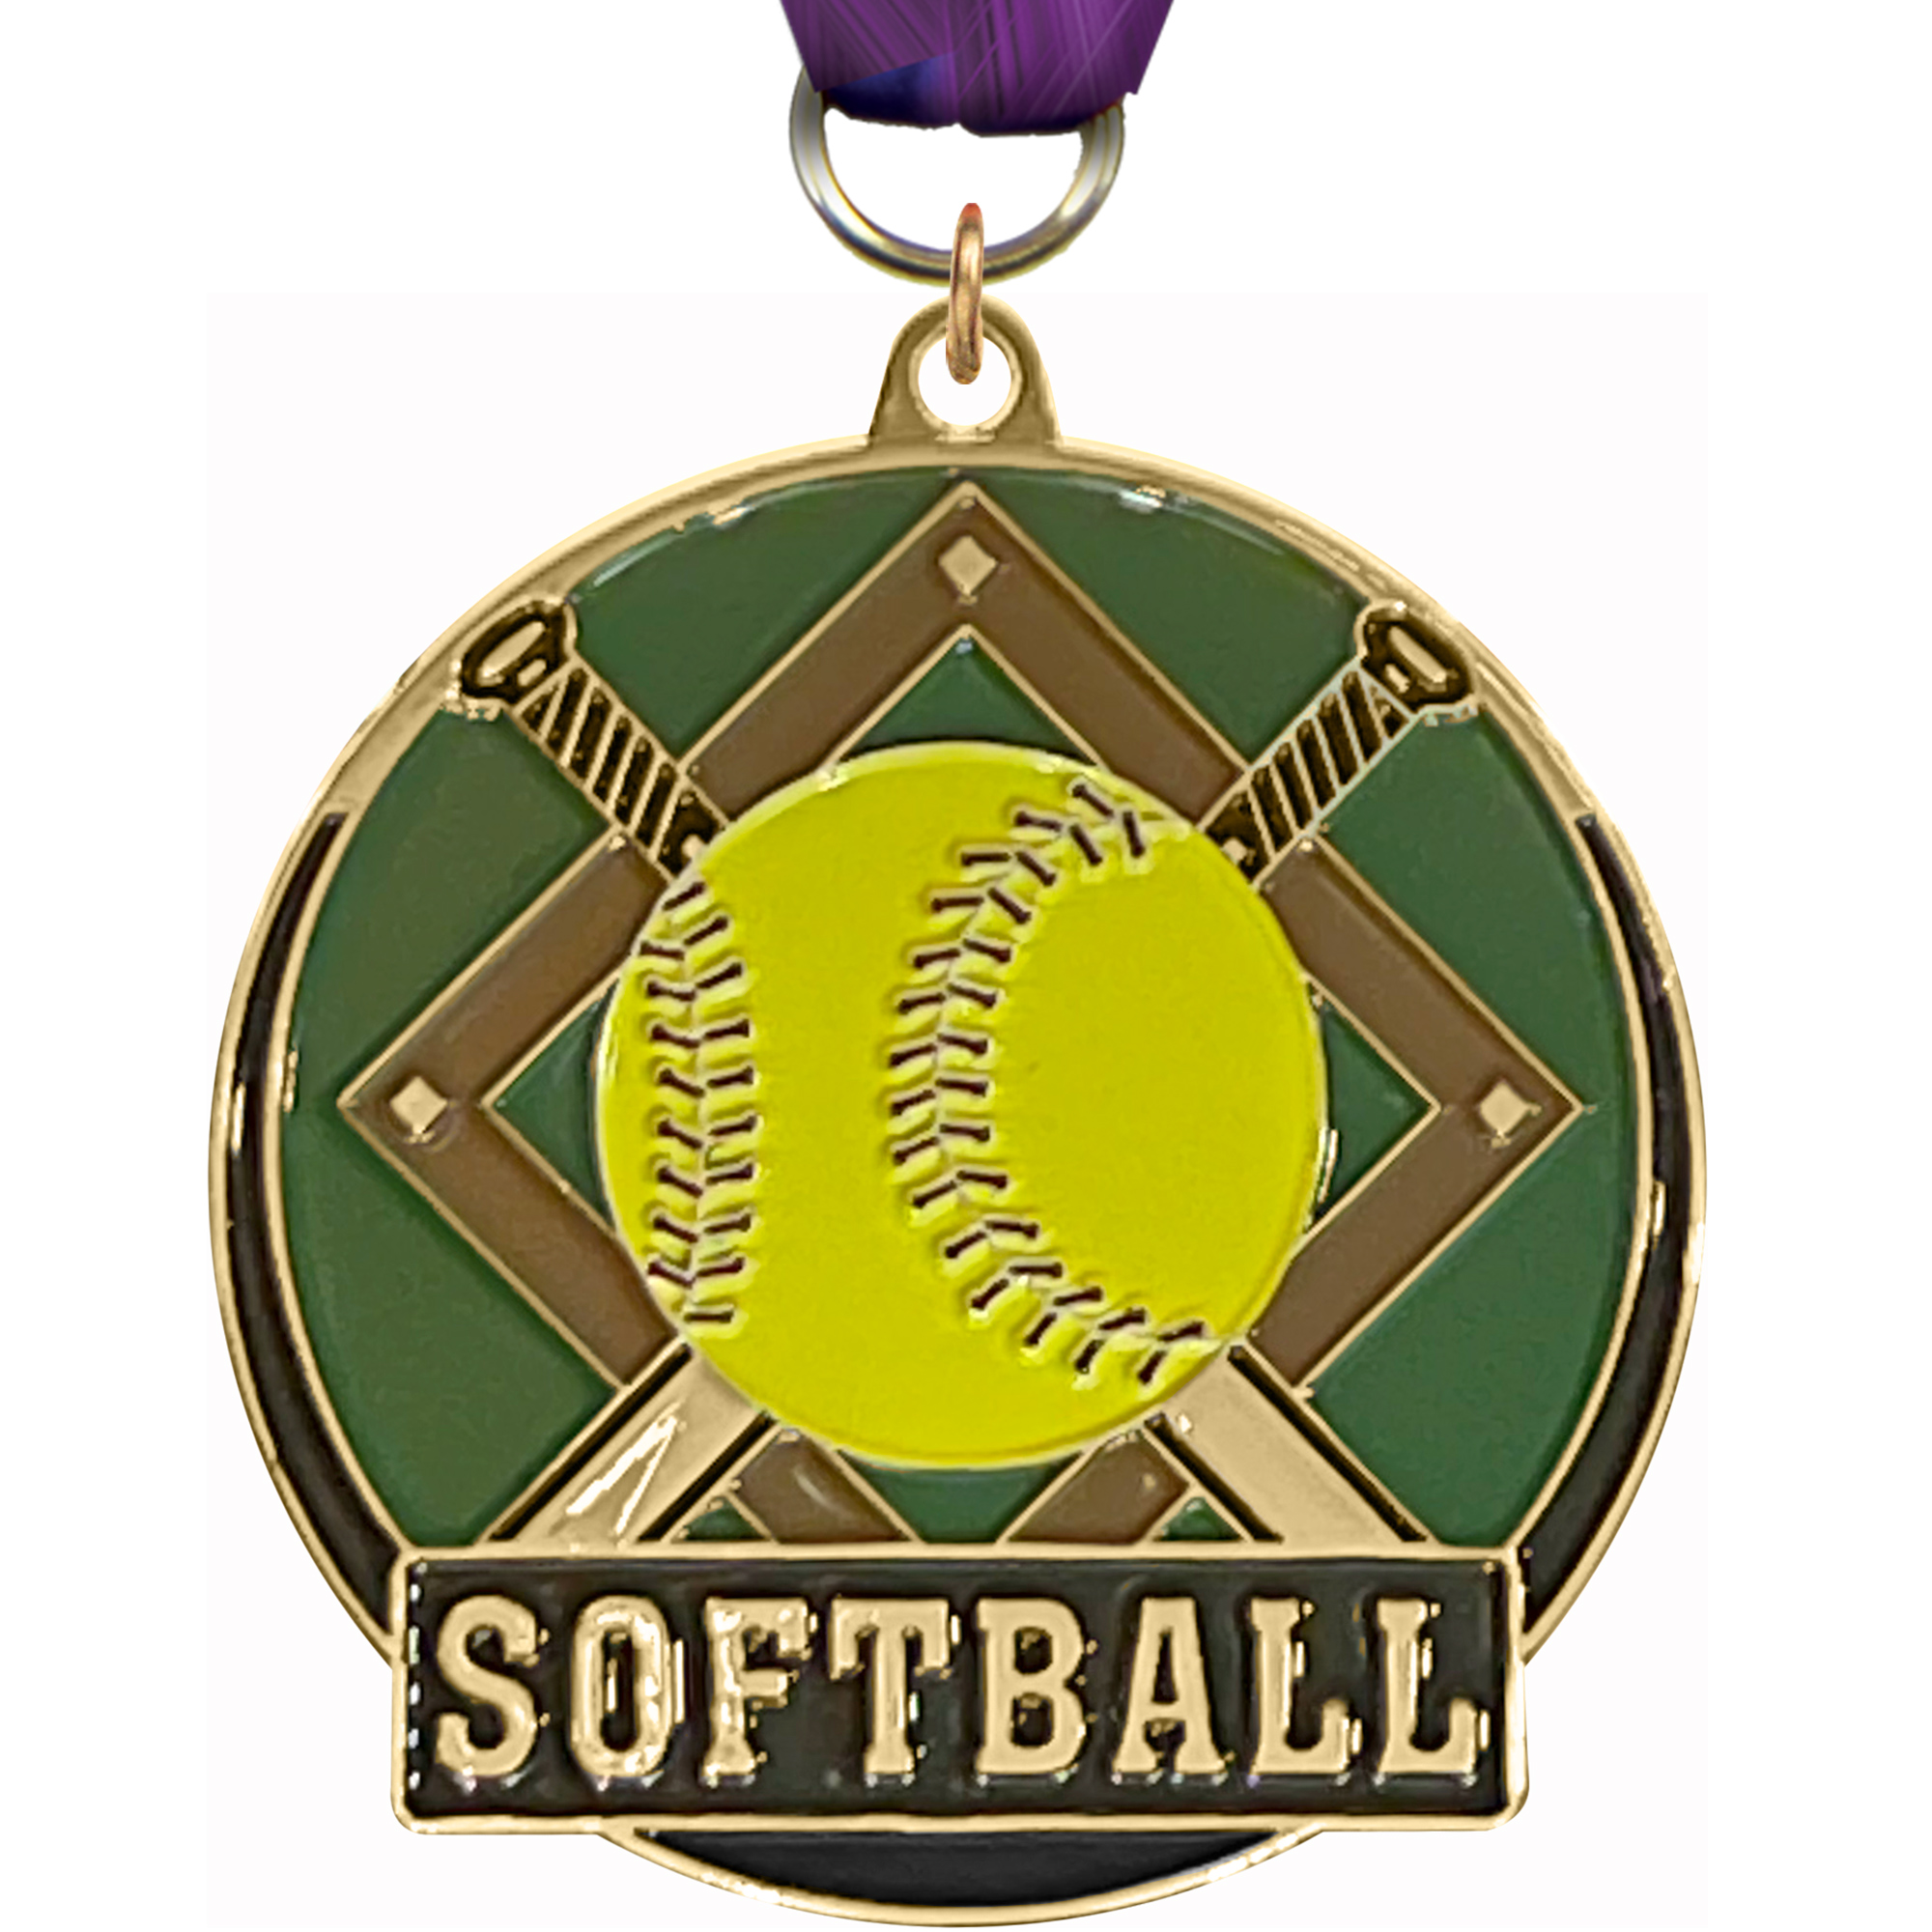 Softball Enameled Medal